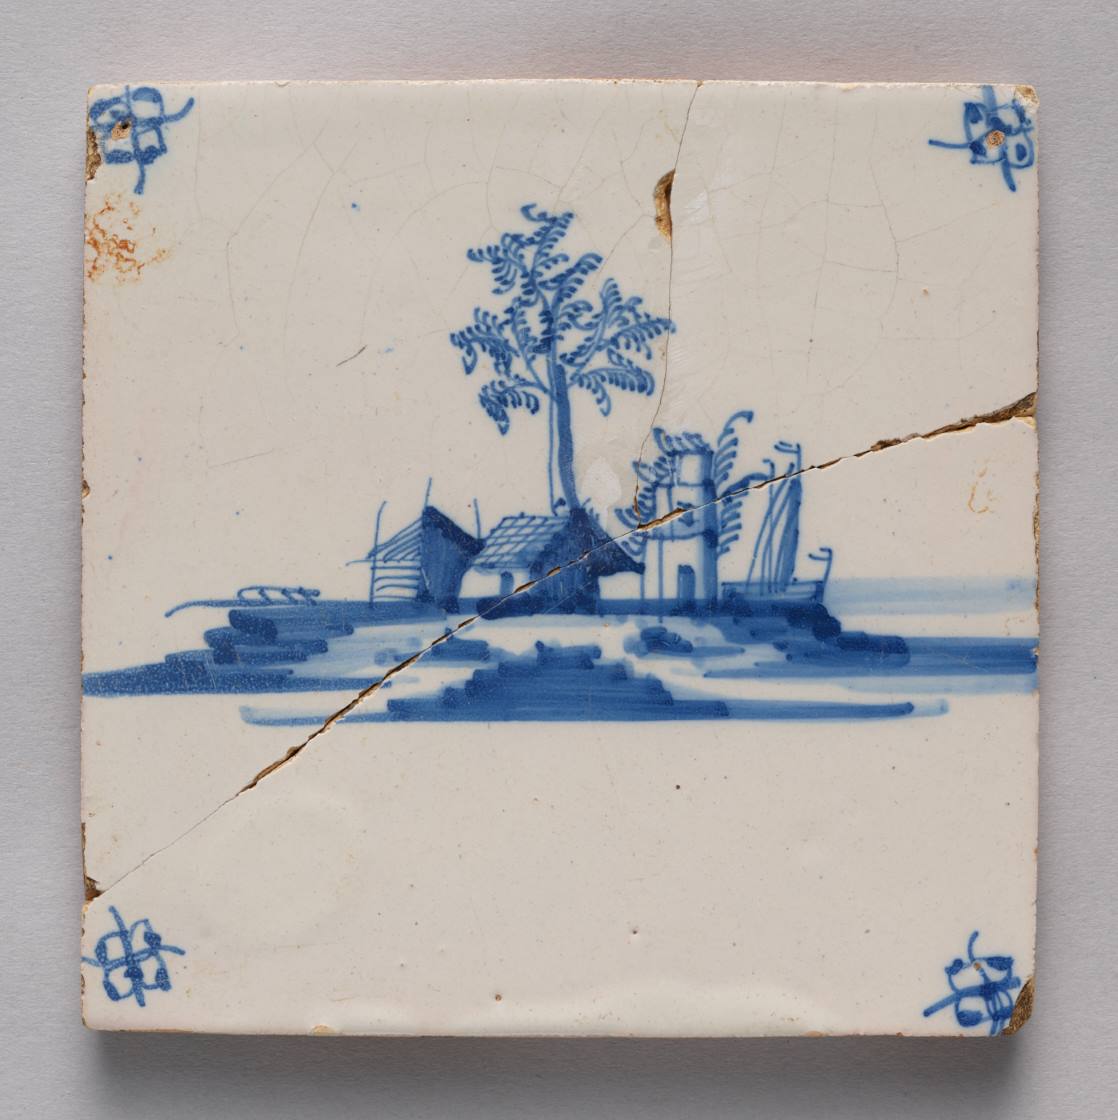 Kwadratowa, ceramiczna płytka rozłamana pośrodku na dwie nierówne części. Na płytce namalowano pejzażyk z trzema niskimi budynkami, drzewem po środku i łódką z boku.